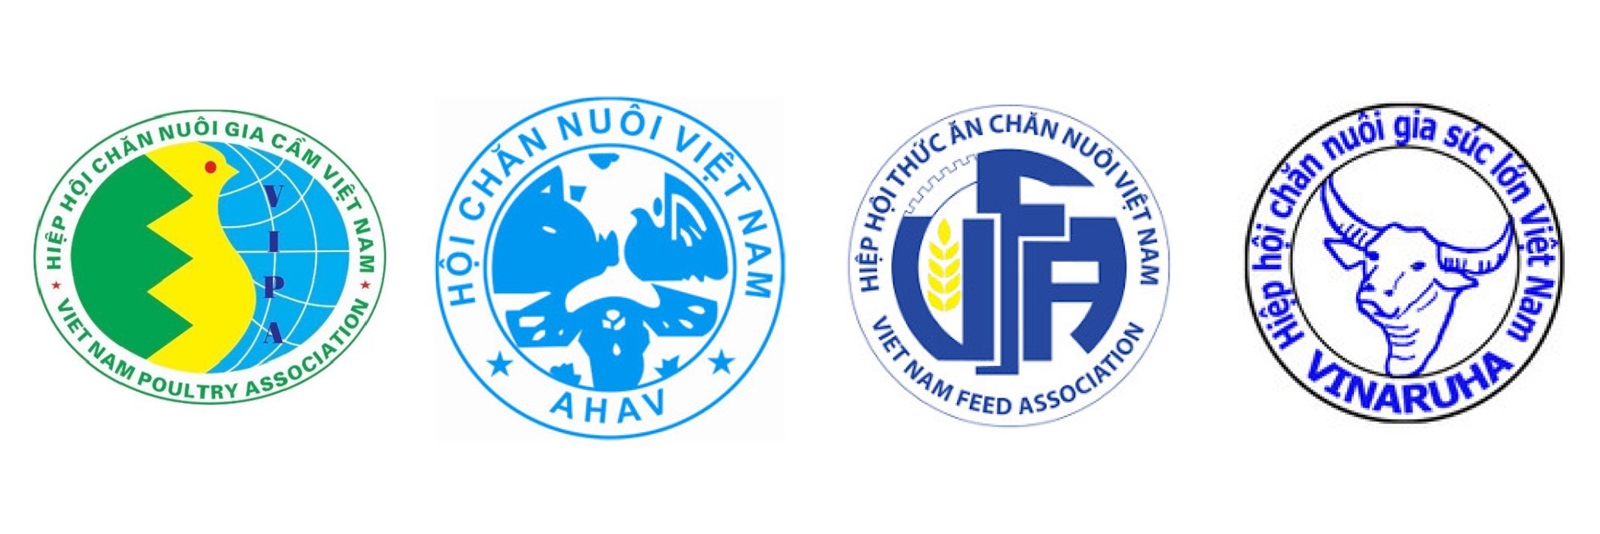 Hội Chăn nuôi Việt Nam và các Hiệp hội kiến nghị bỏ quy định công bố hợp quy thức ăn chăn nuôi, thuốc thú y, kiểm soát nhập khẩu sản phẩm chăn nuôi